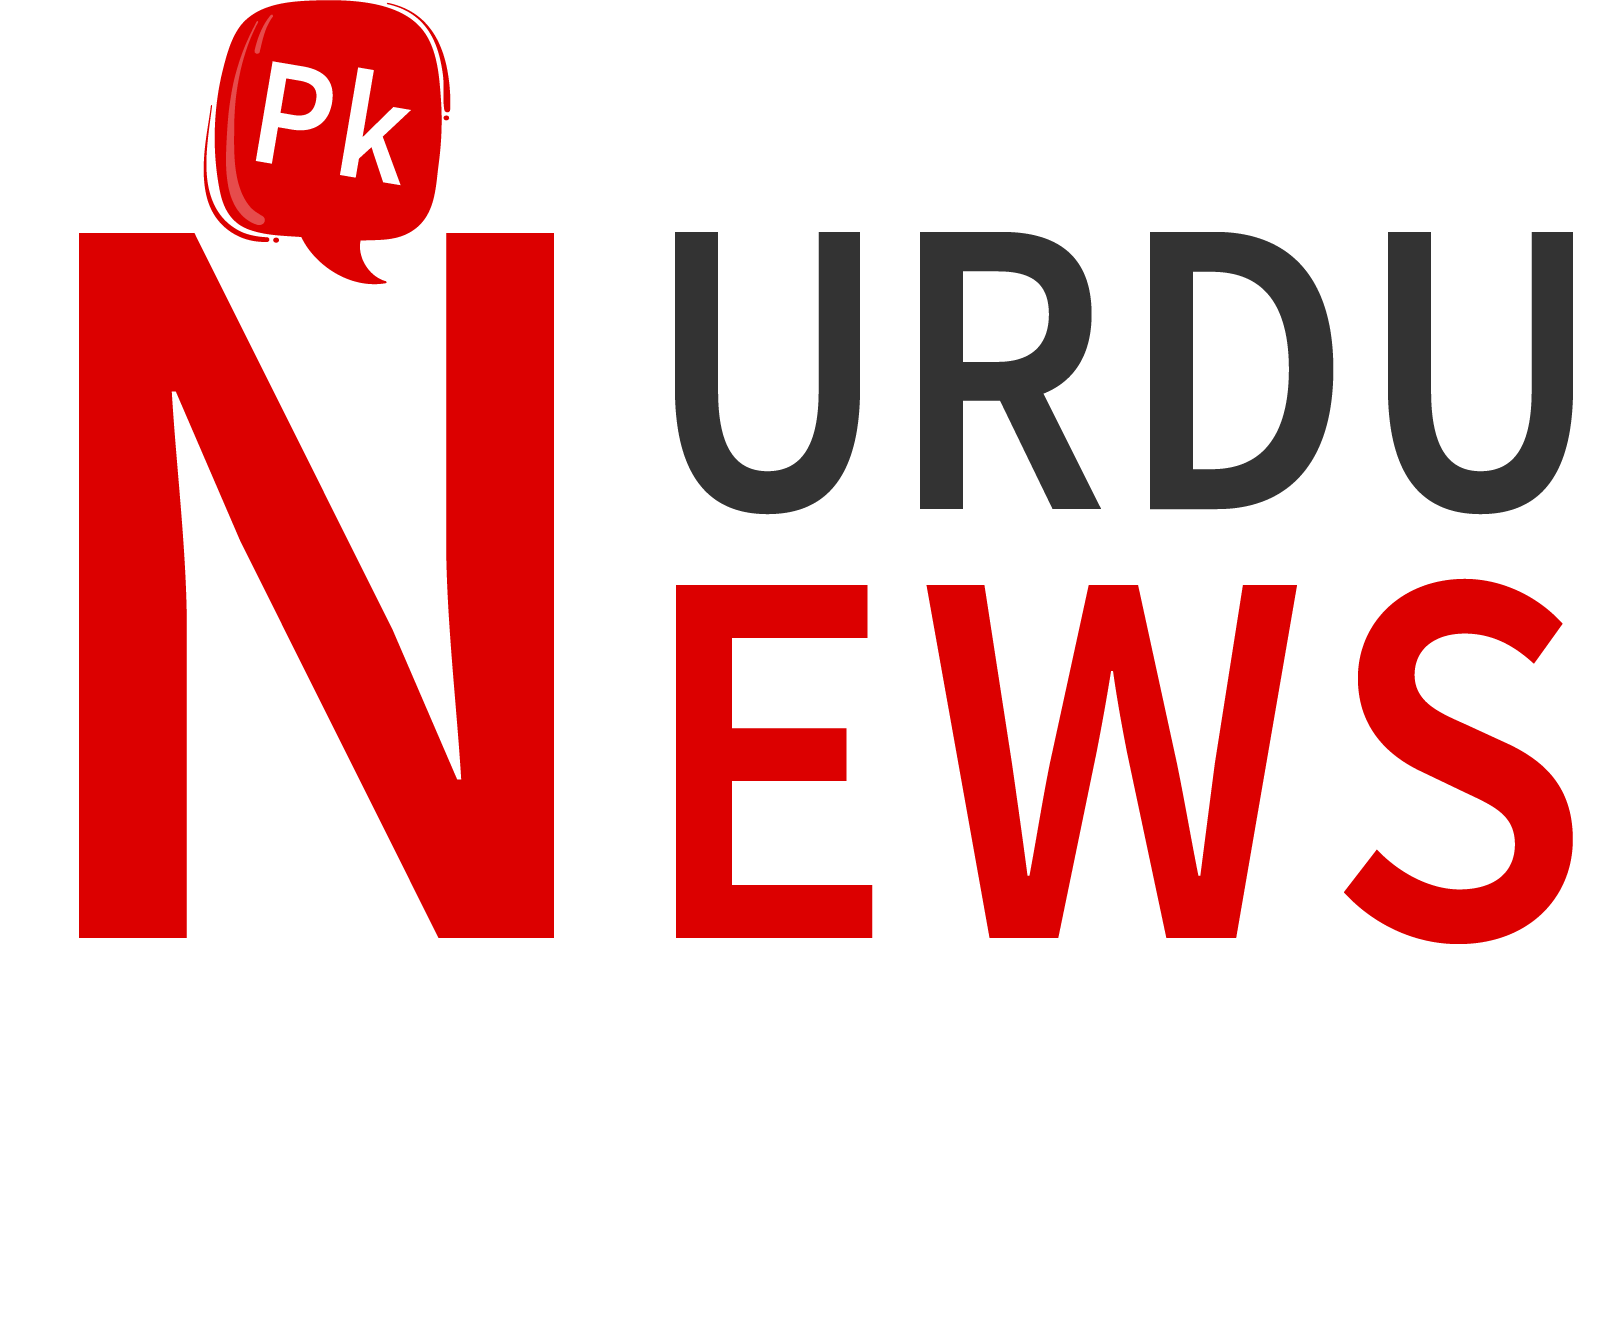 PK Urdu News